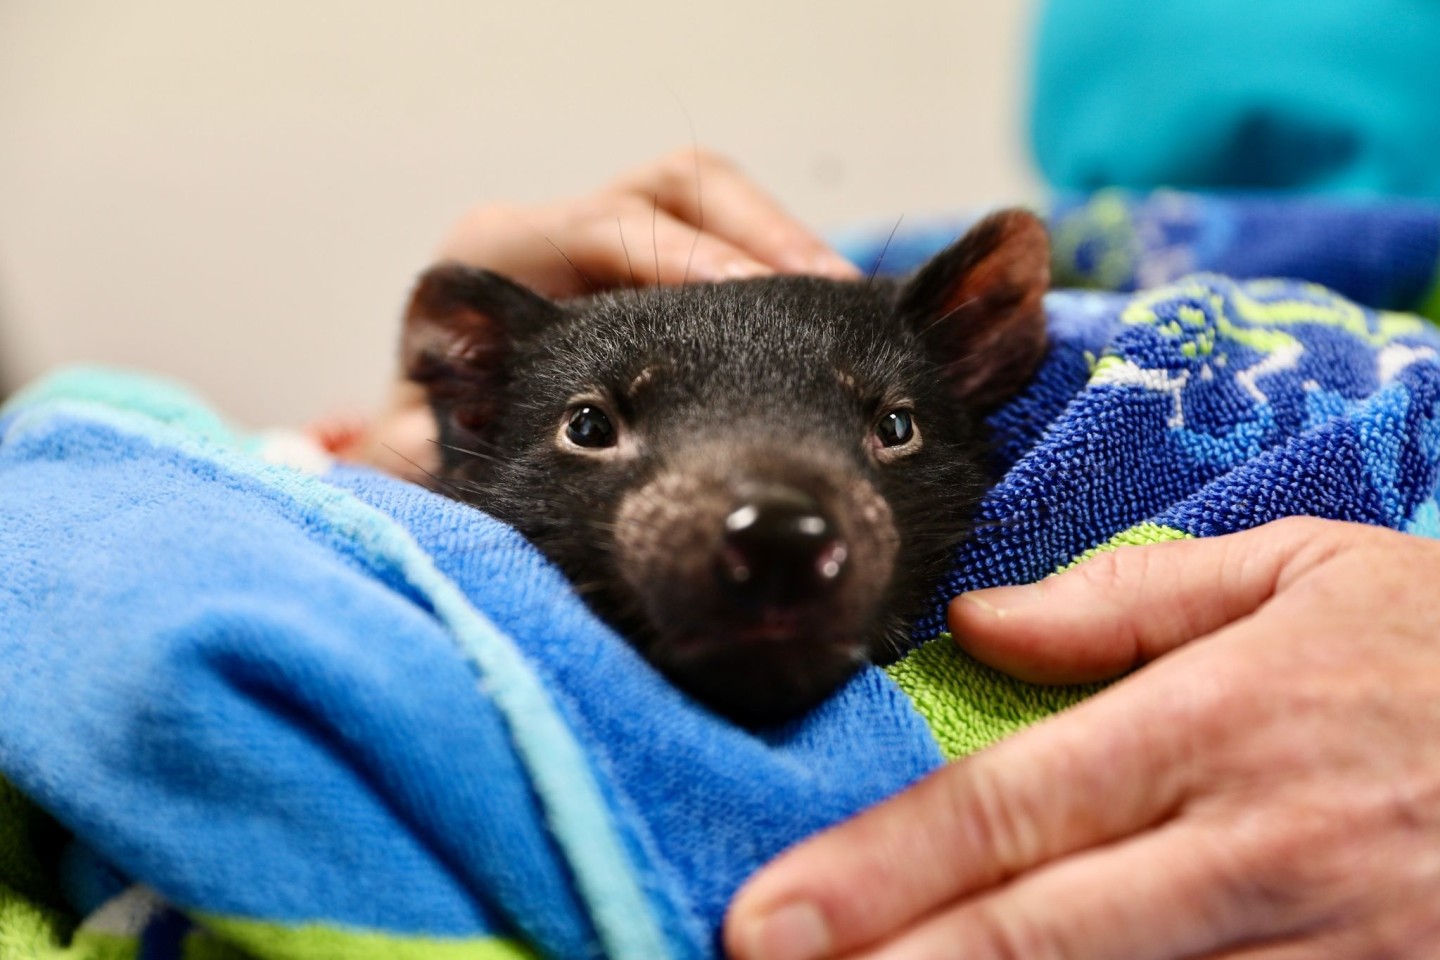 Tierärzte in Australien haben erstmals eine Katarakt-Operation bei einem Tasmanischen Teufel durchgeführt.